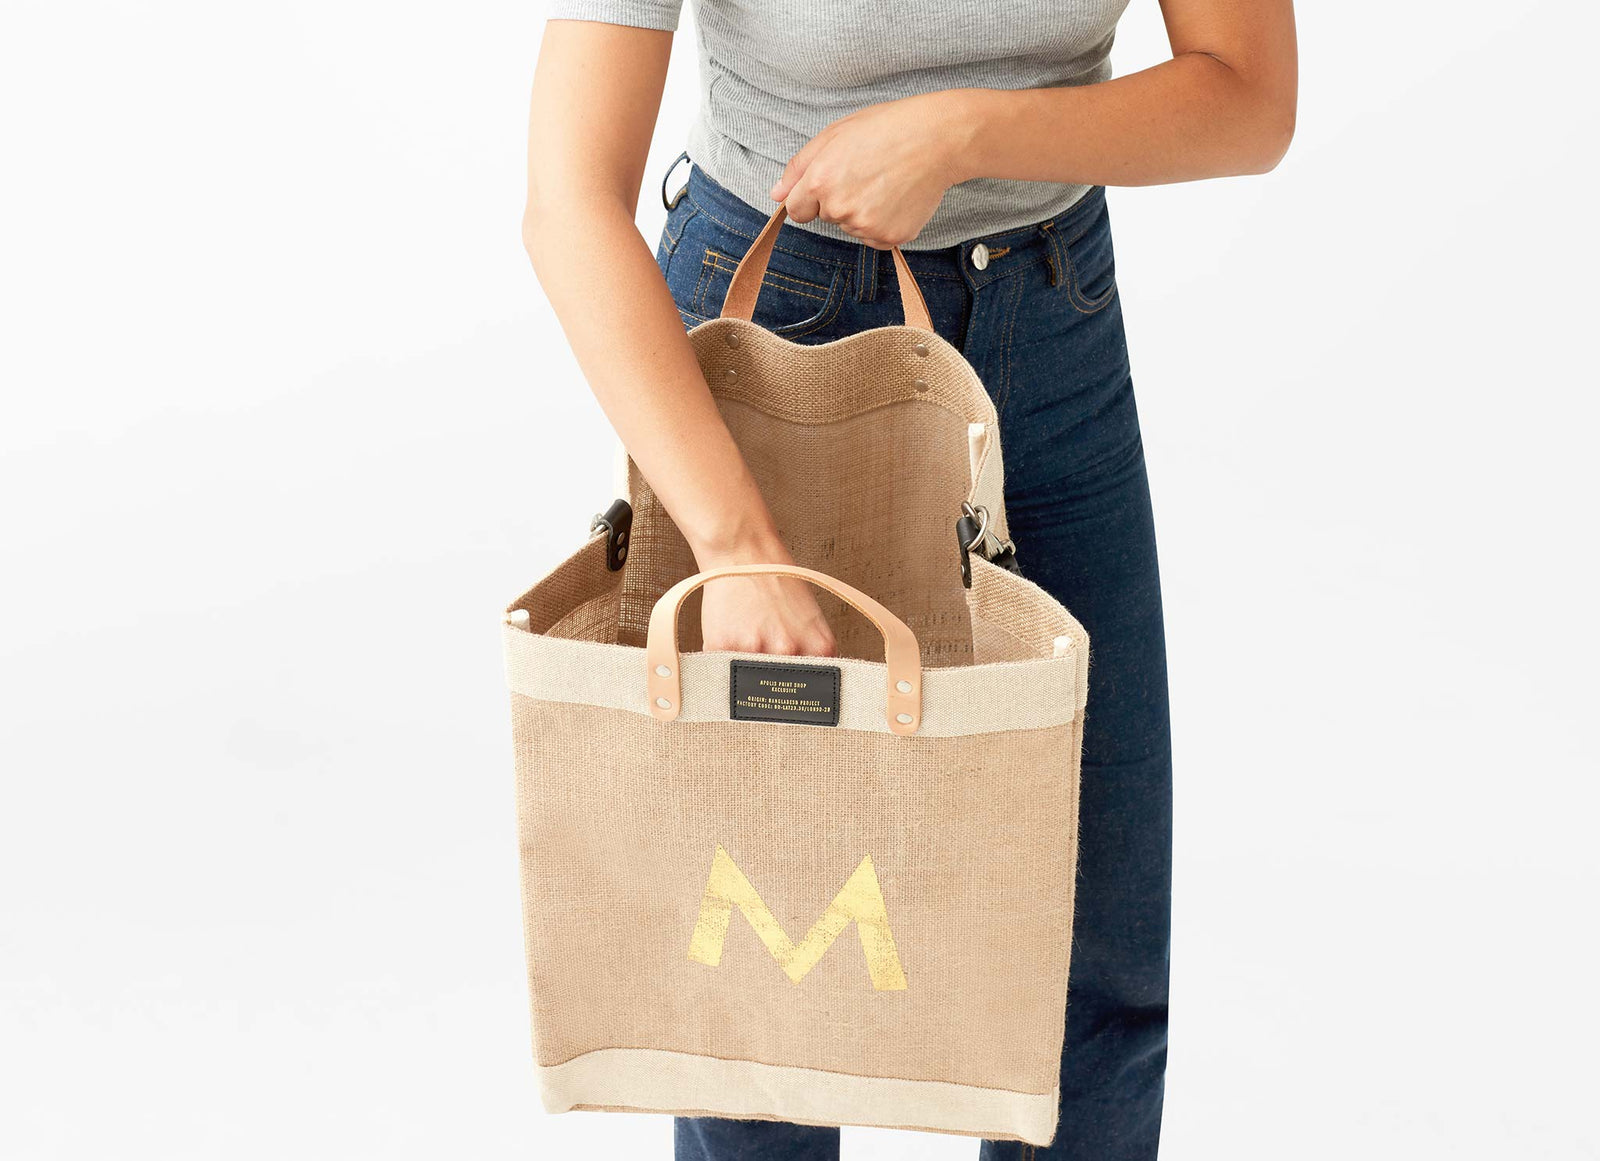 Customizable Gold Foil Detachable Market Bag | Artist Collaboration